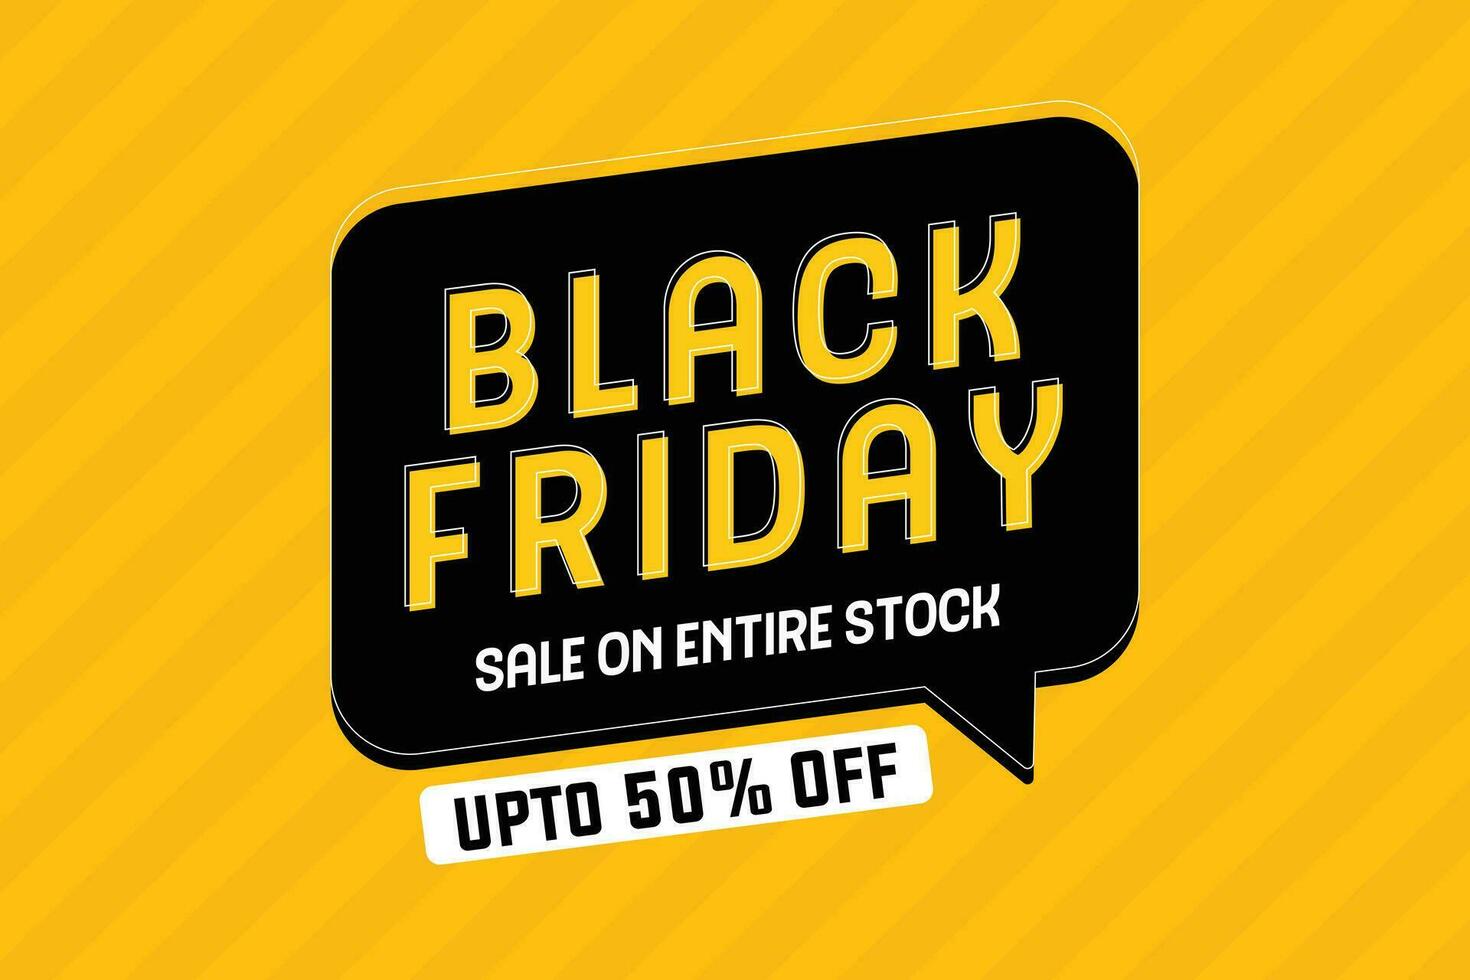 Black friday sale banner eps vector file. Black friday sale promotion